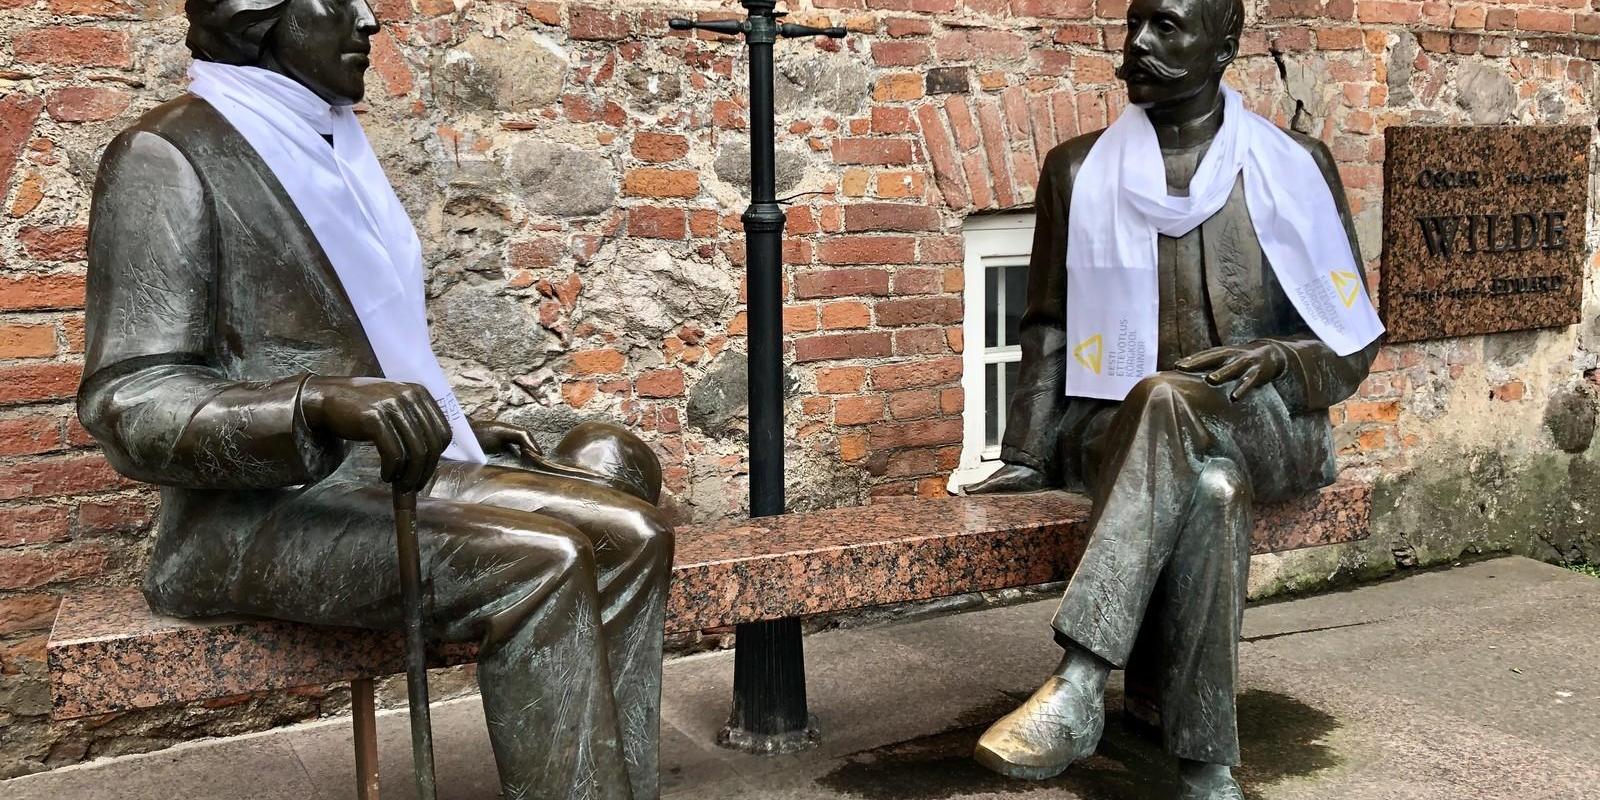 Kaks meest, Eduard Vilde ja Oskar Wilde, istumas kivist pingil ning jutustamas